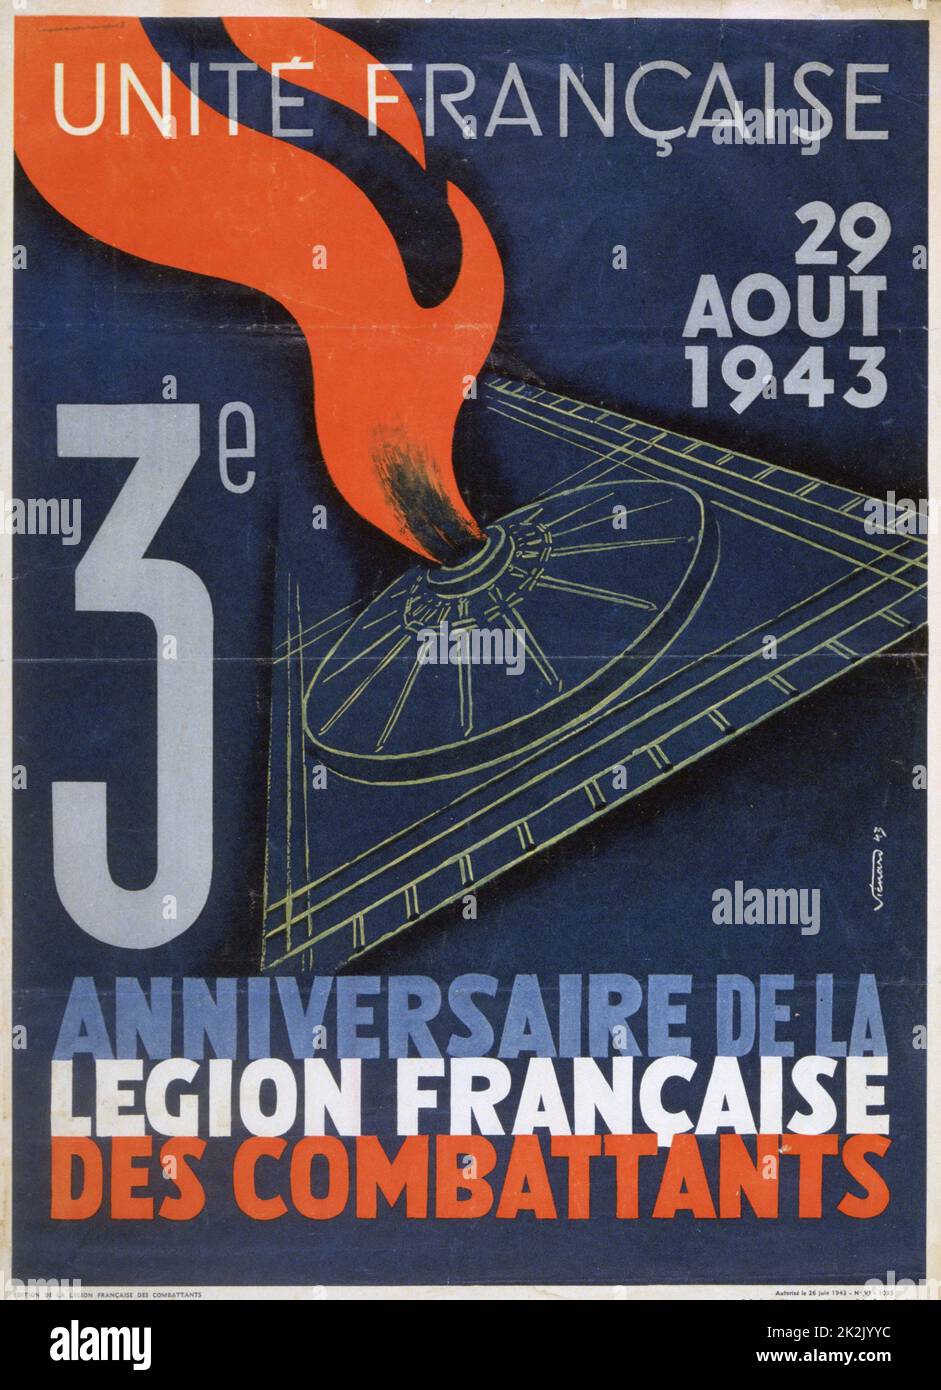 Des zweiten Weltkrieges 1939-1945: United Frankreich - Poster anlässlich des dritten Jahrestages der französischen Fighting Legion, Frankreich, 1943. Stockfoto